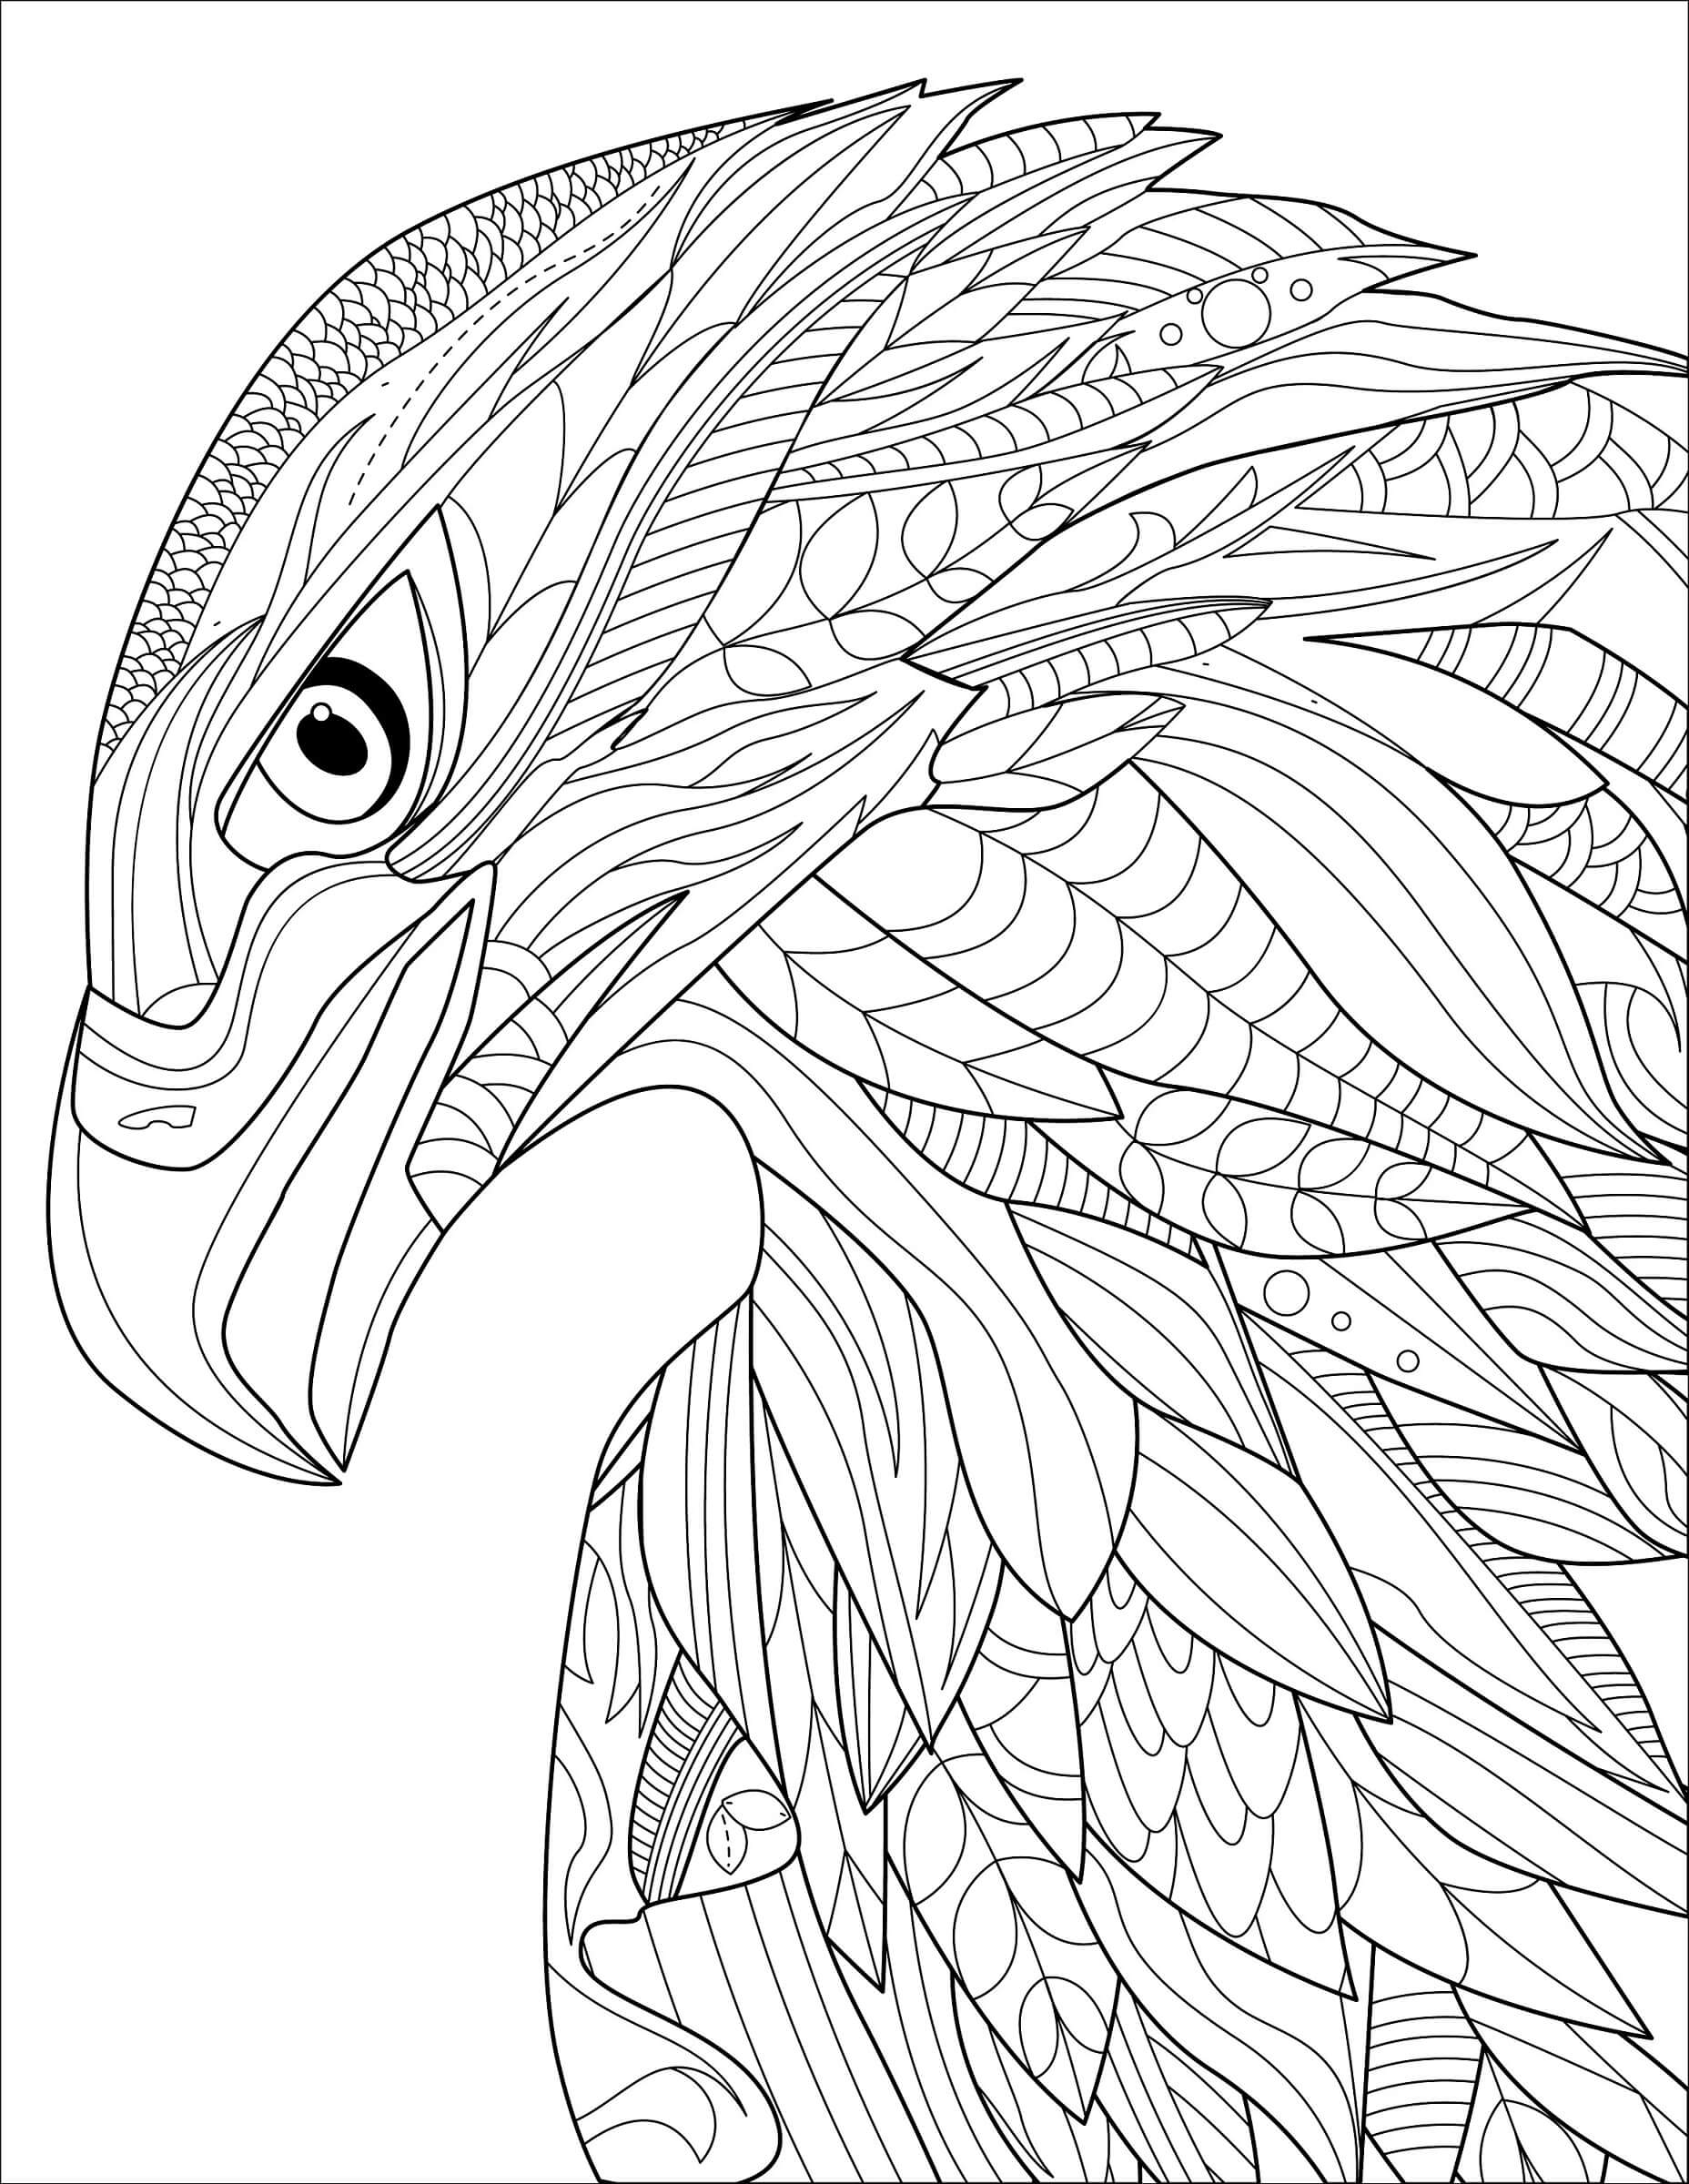 Mandala Eagle Head Coloring Page Mandalas